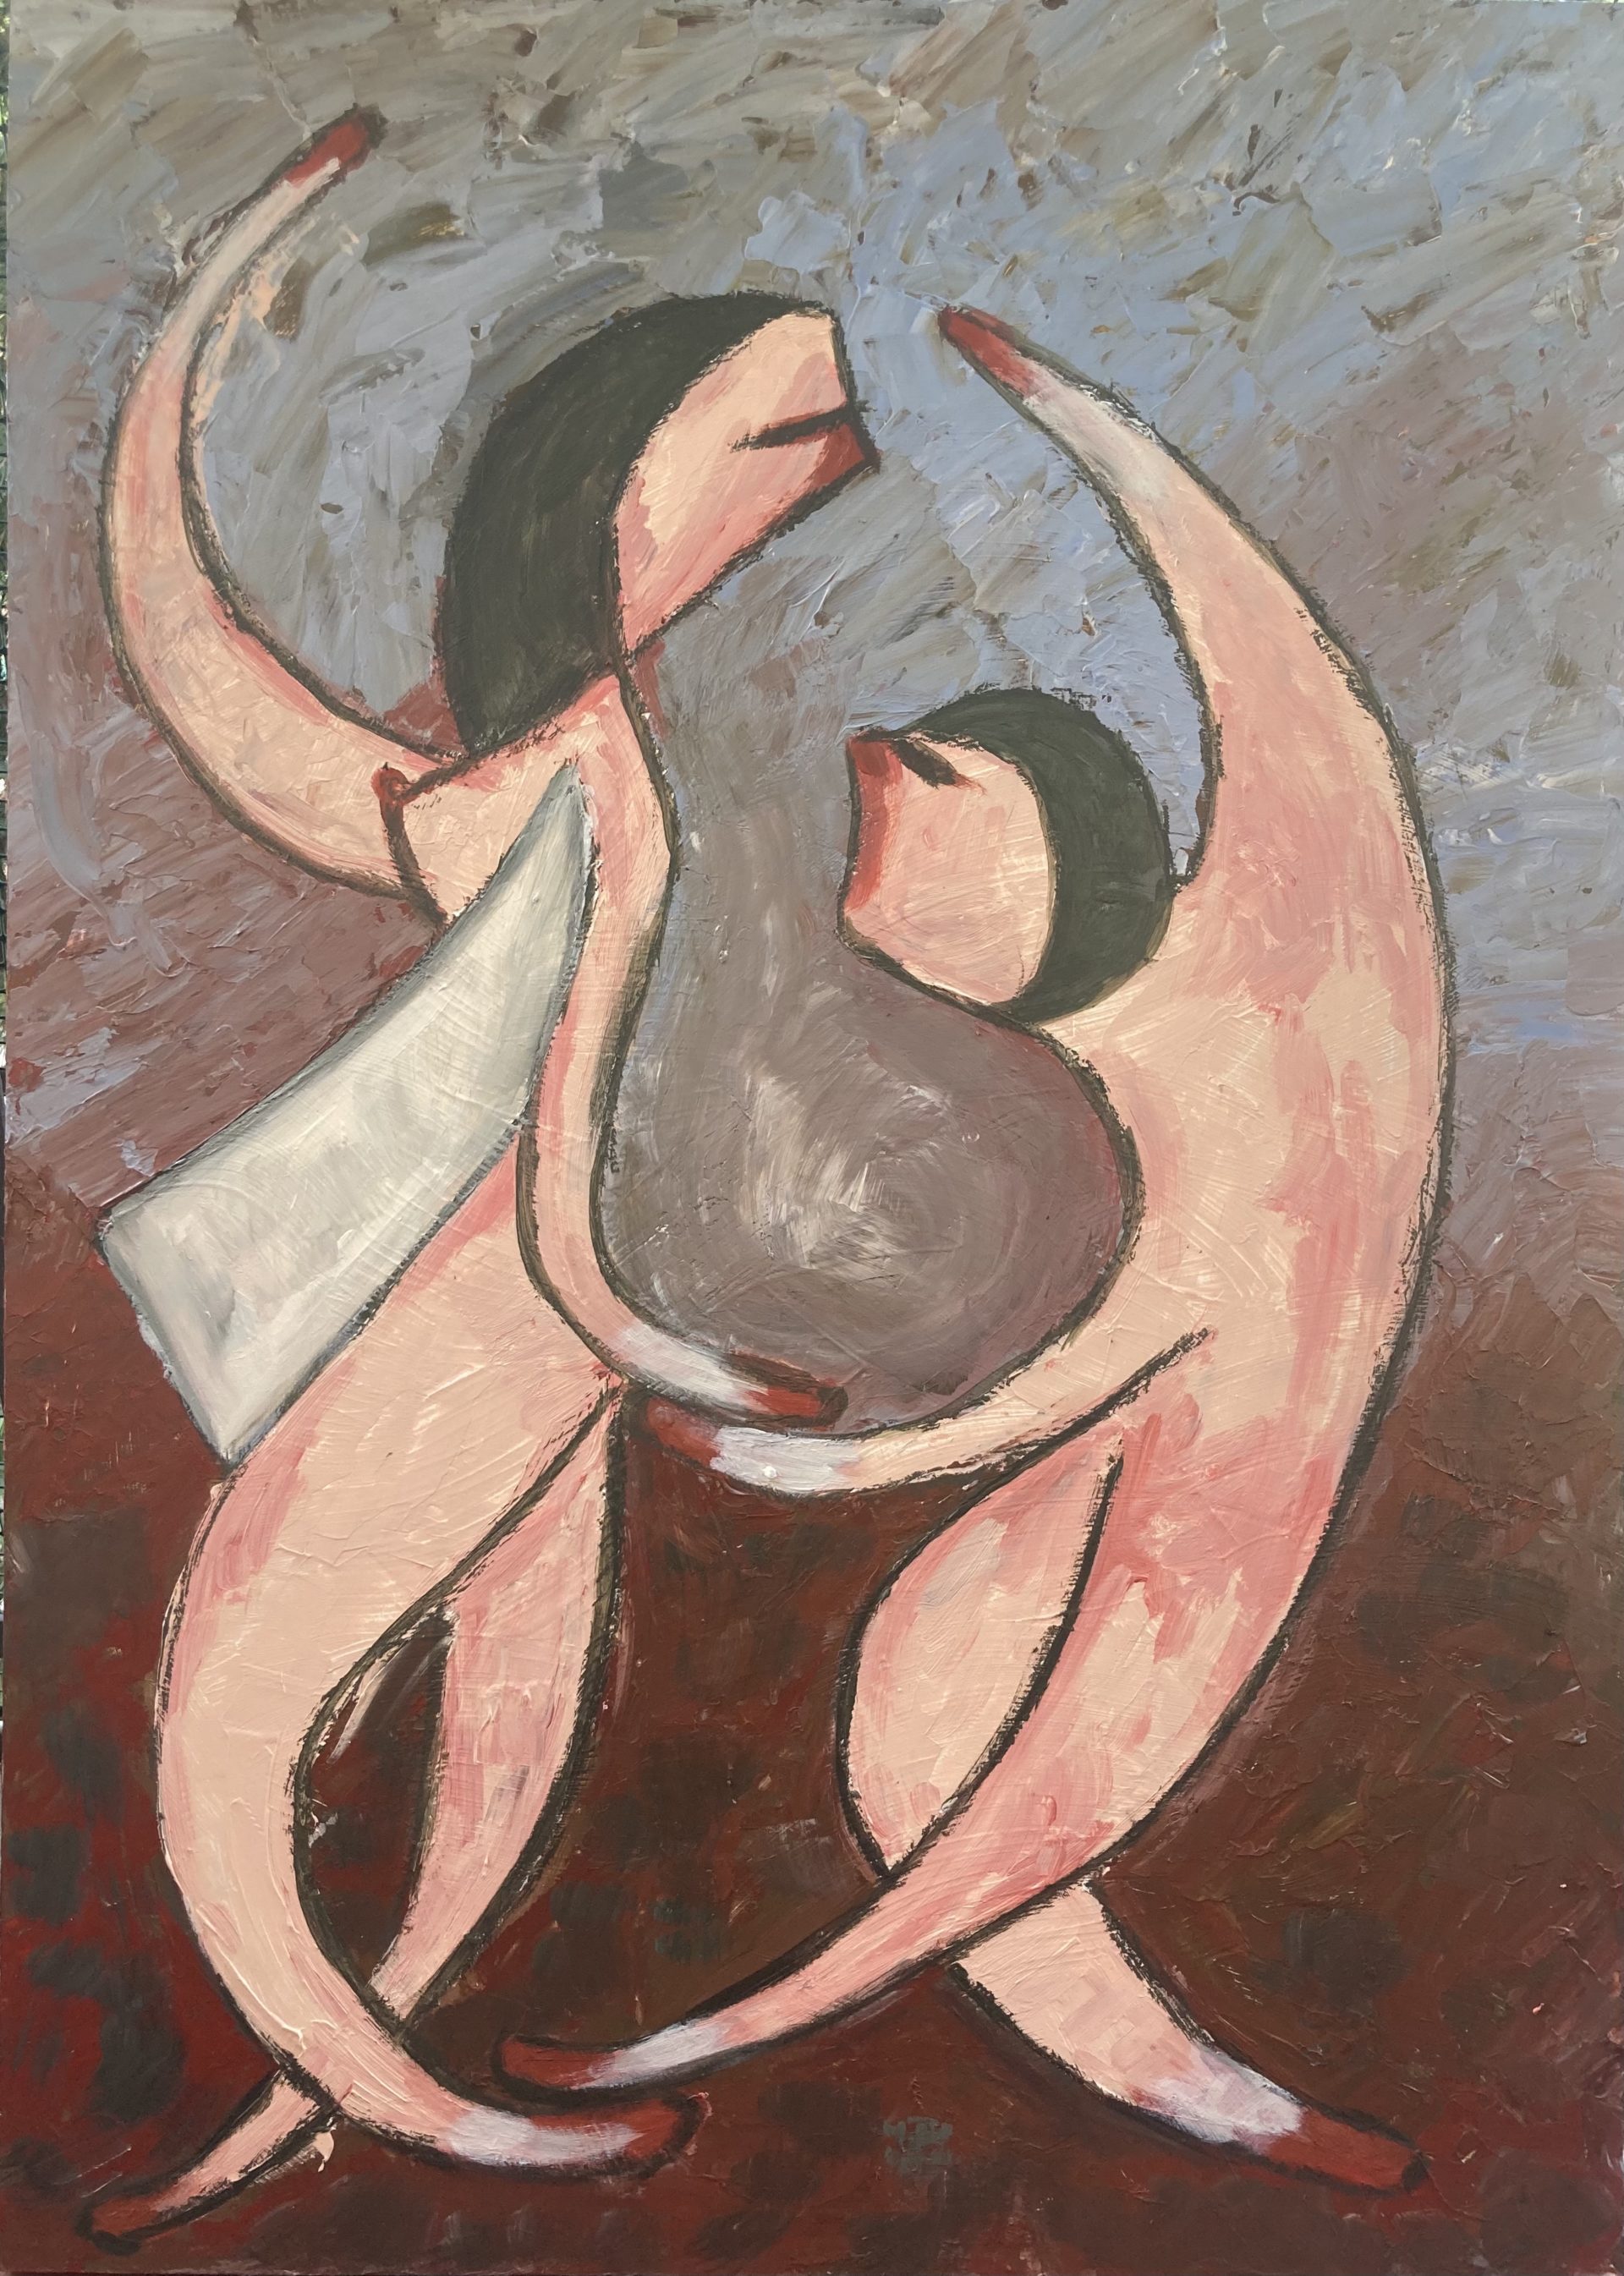 dipinto acrilico su tavola della raccolta fiammiferi raffigurante una coppia di persone stilizzate in stile espressionista